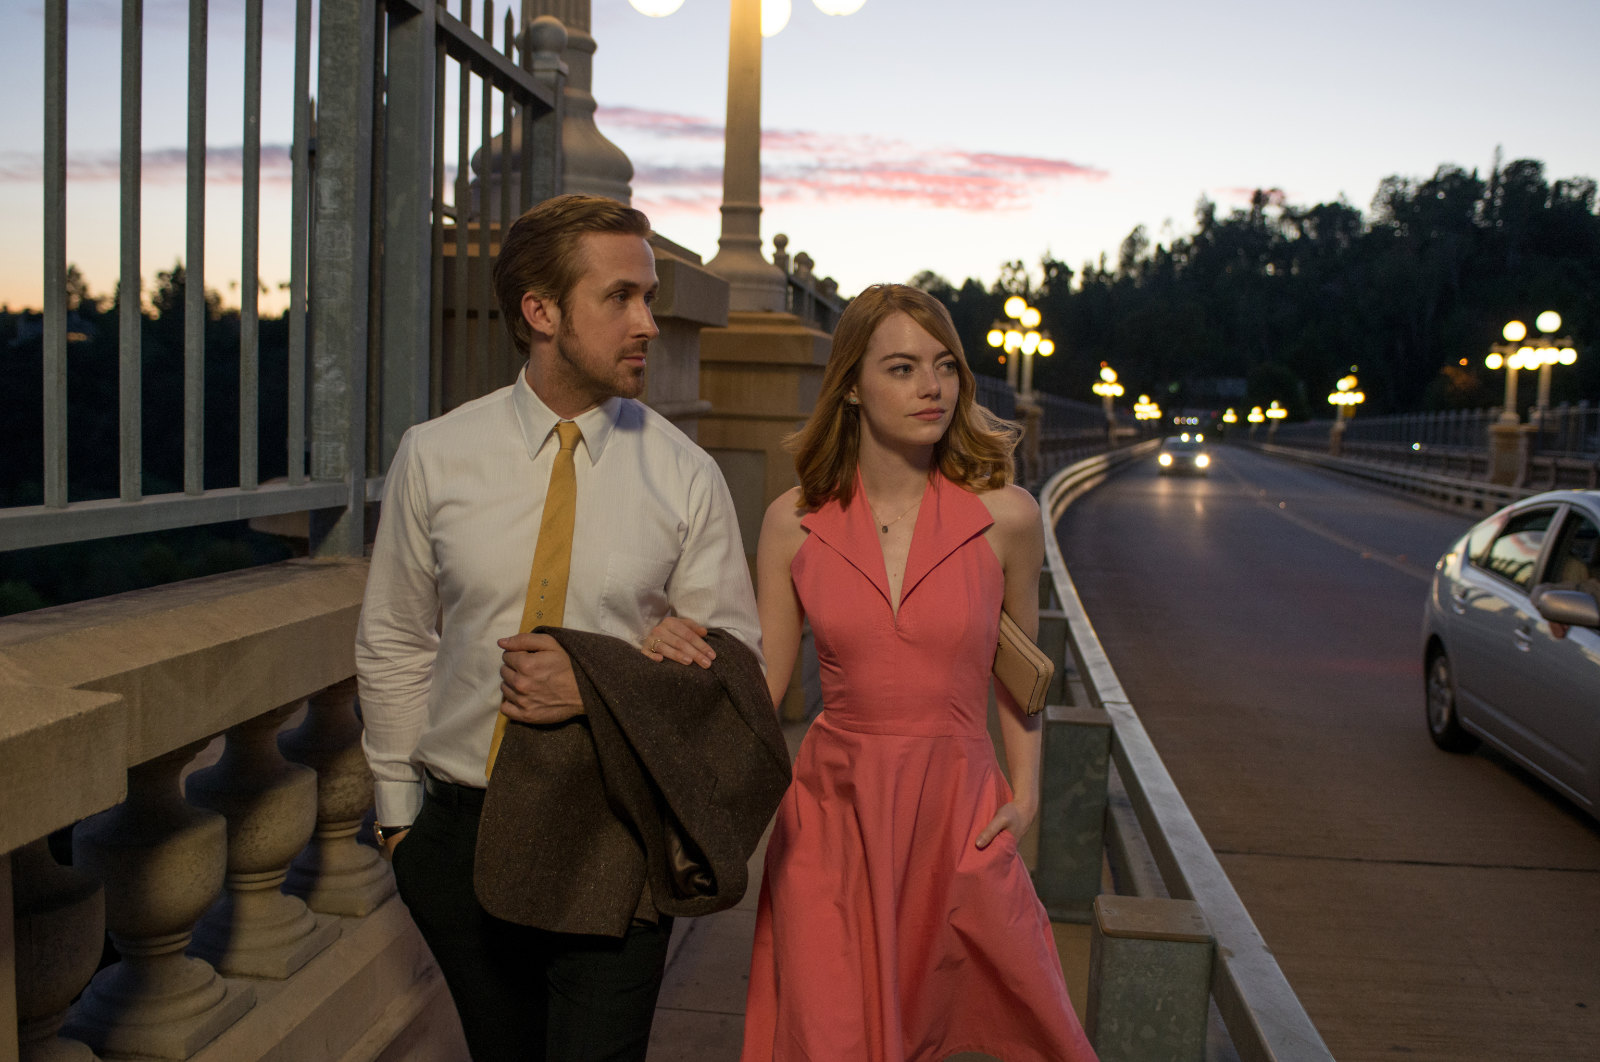 Ryan Gosling and Emma Stone in La La Land, courtesy Lionsgate Publicity.